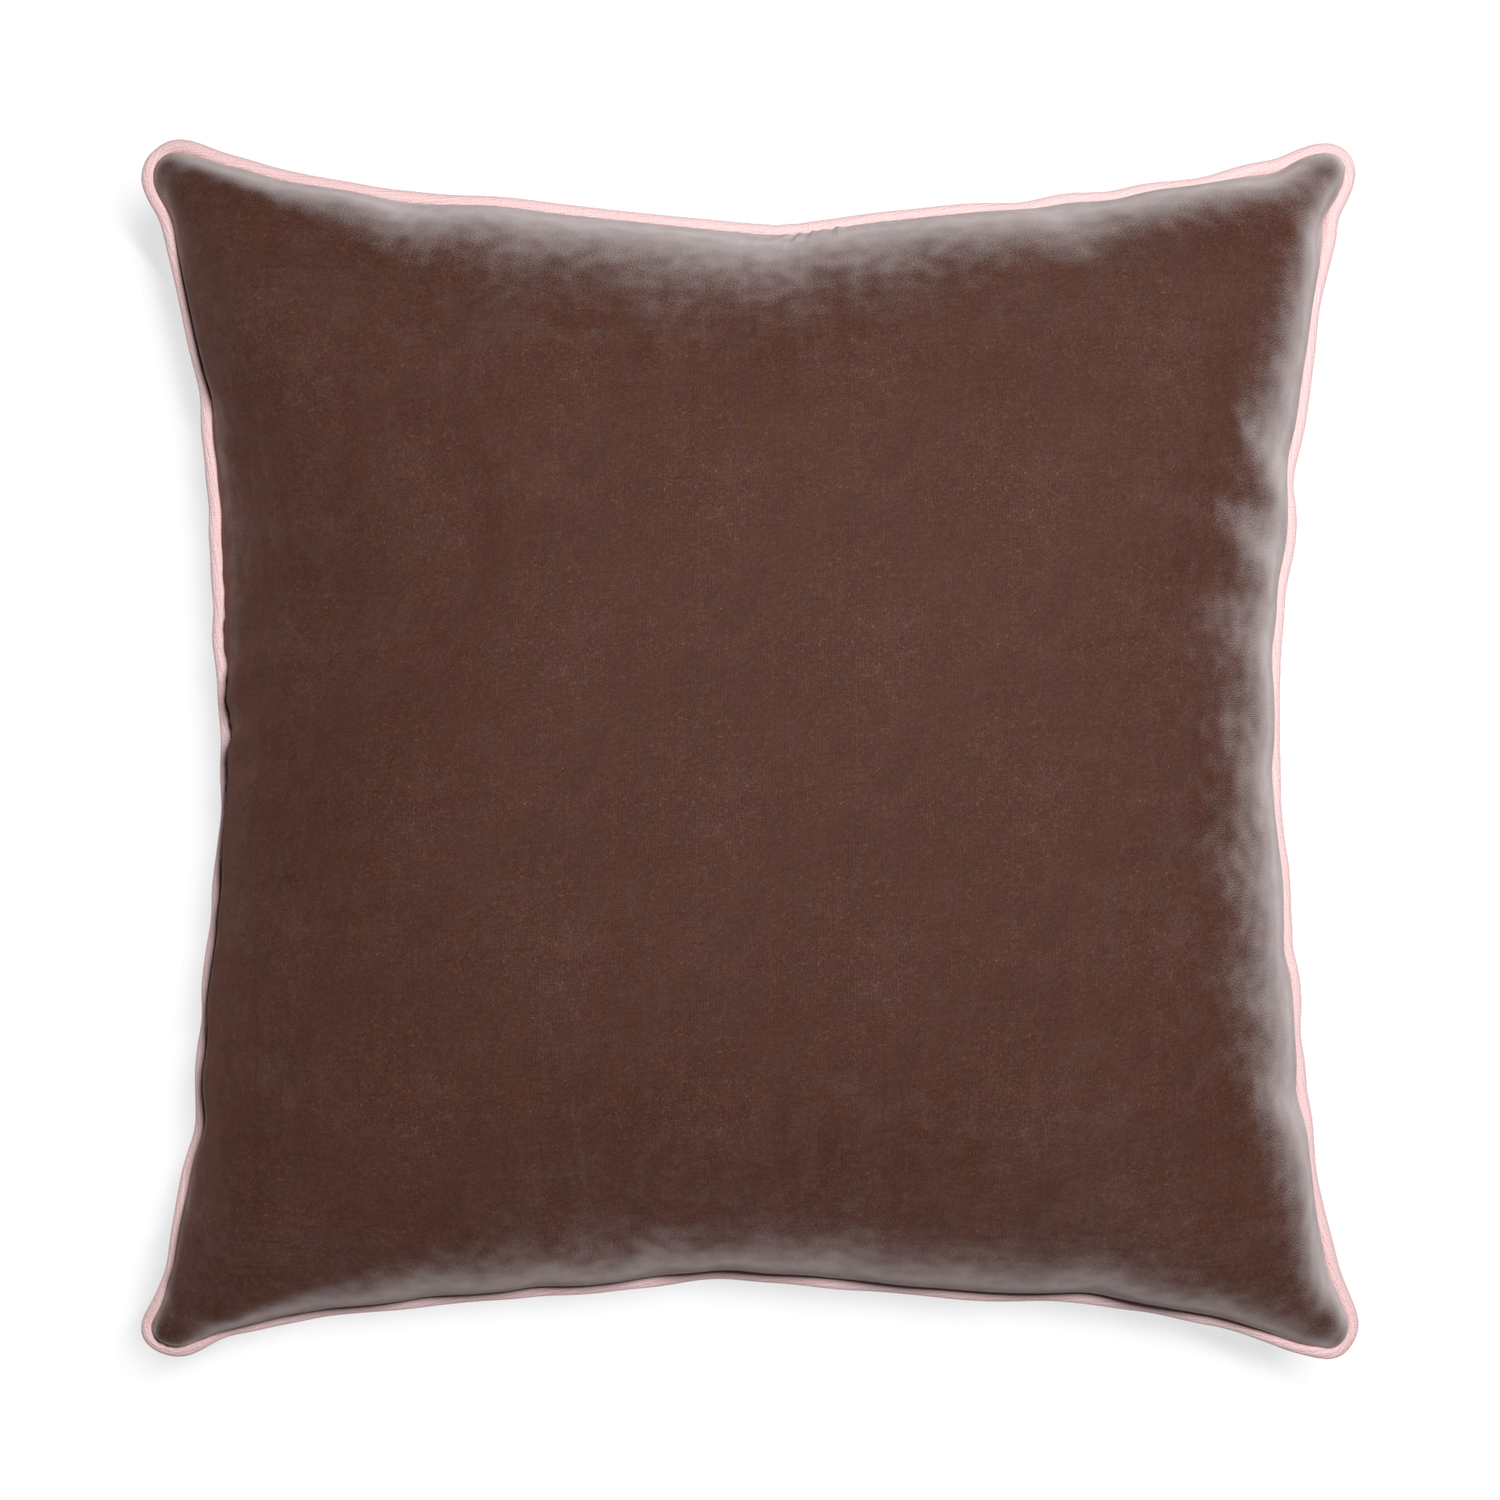 Euro-sham walnut velvet custom pillow with petal piping on white background